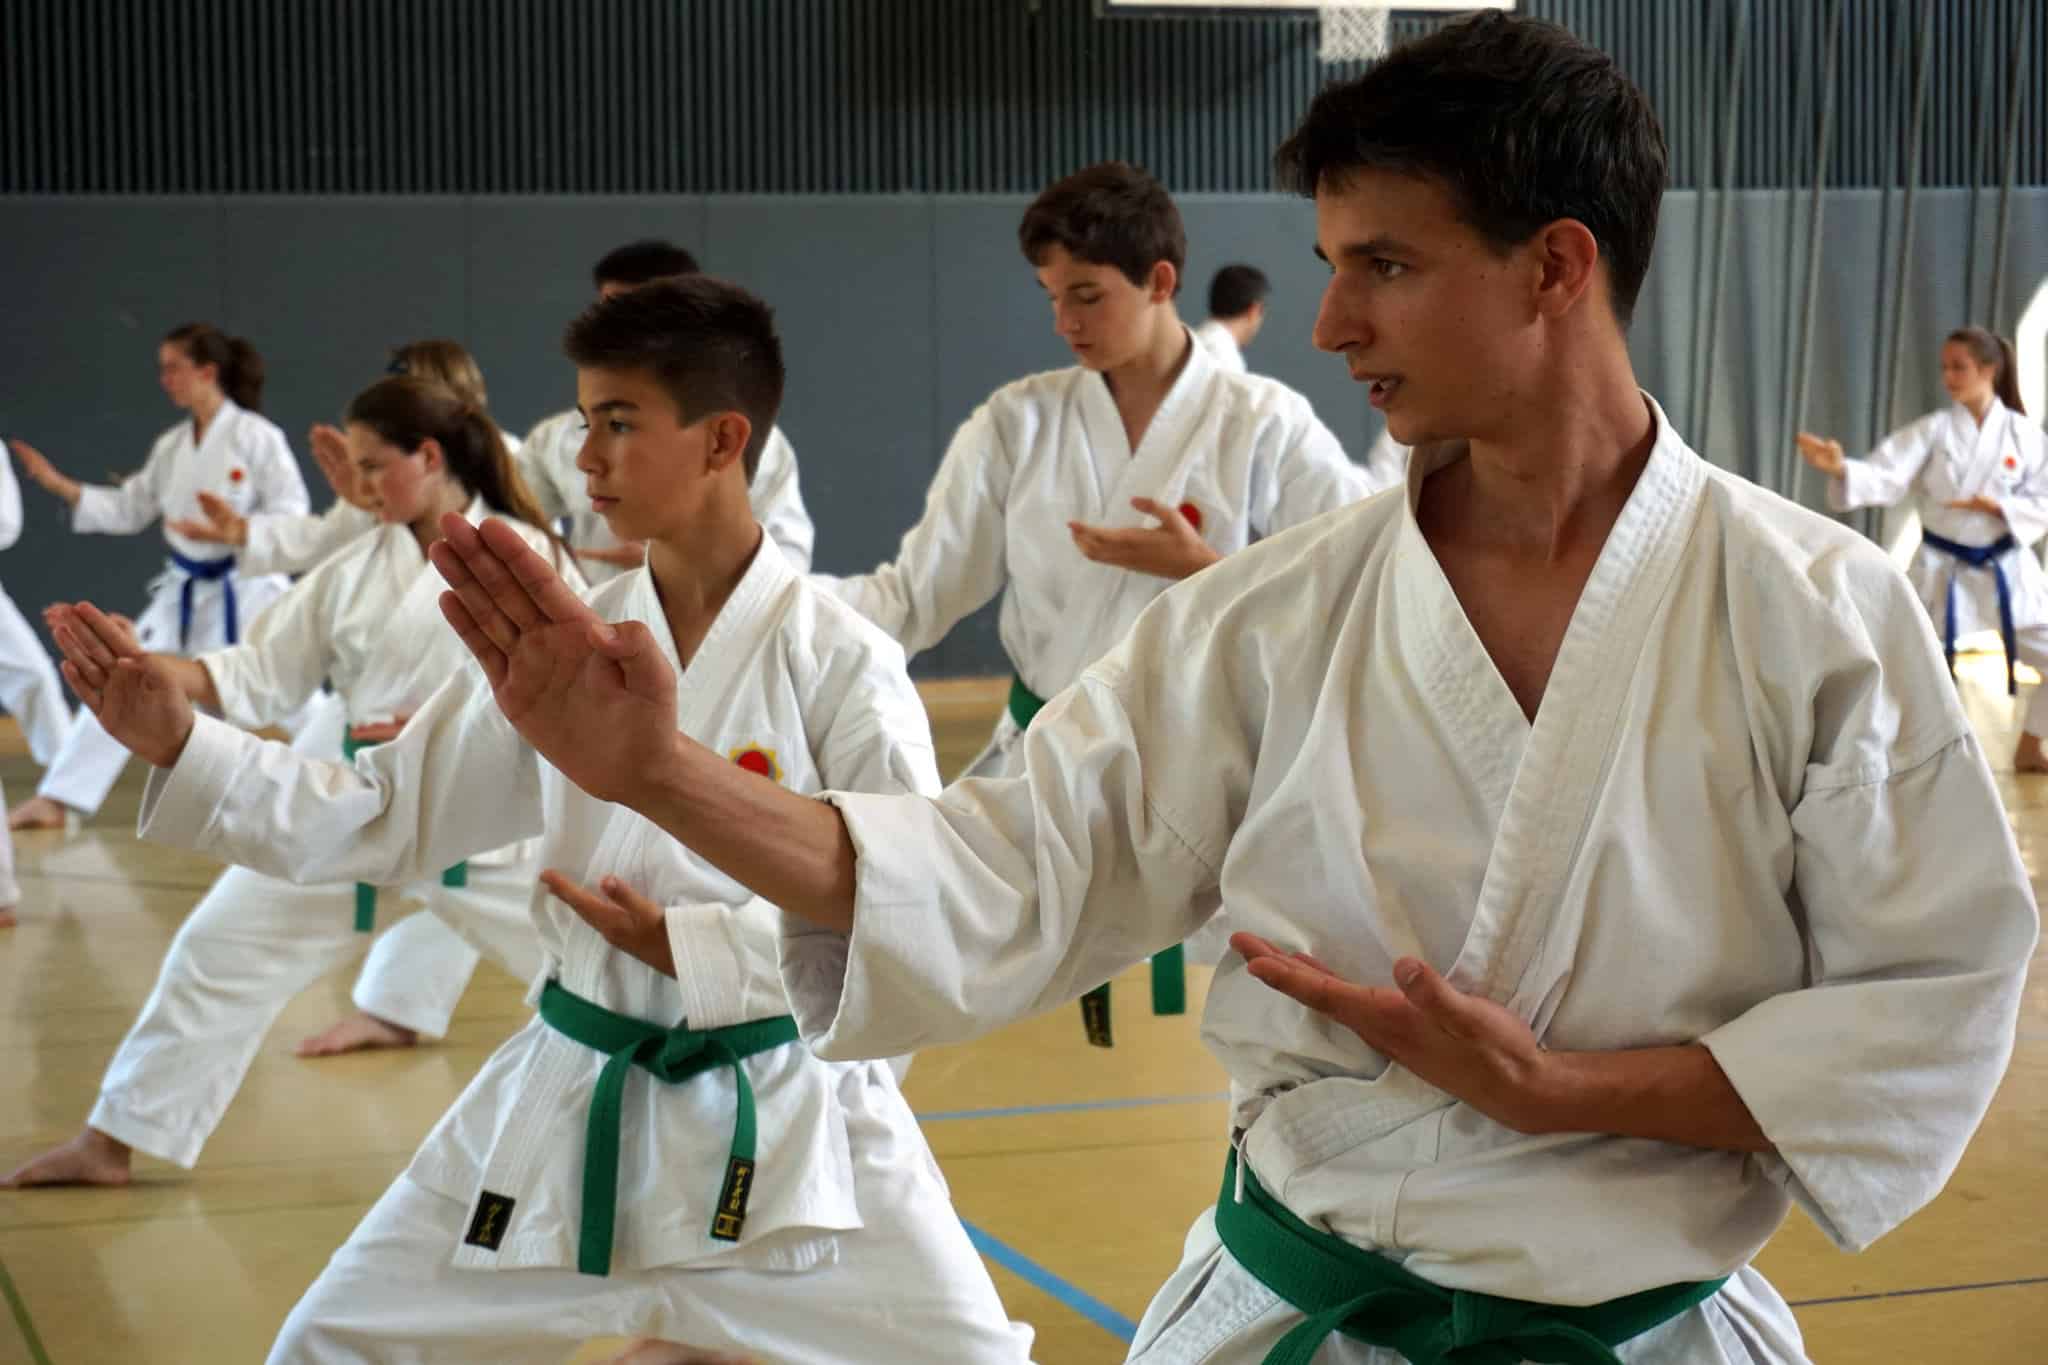 Karatekai Basel - Reise ins Gasshuku 2015 in Bern